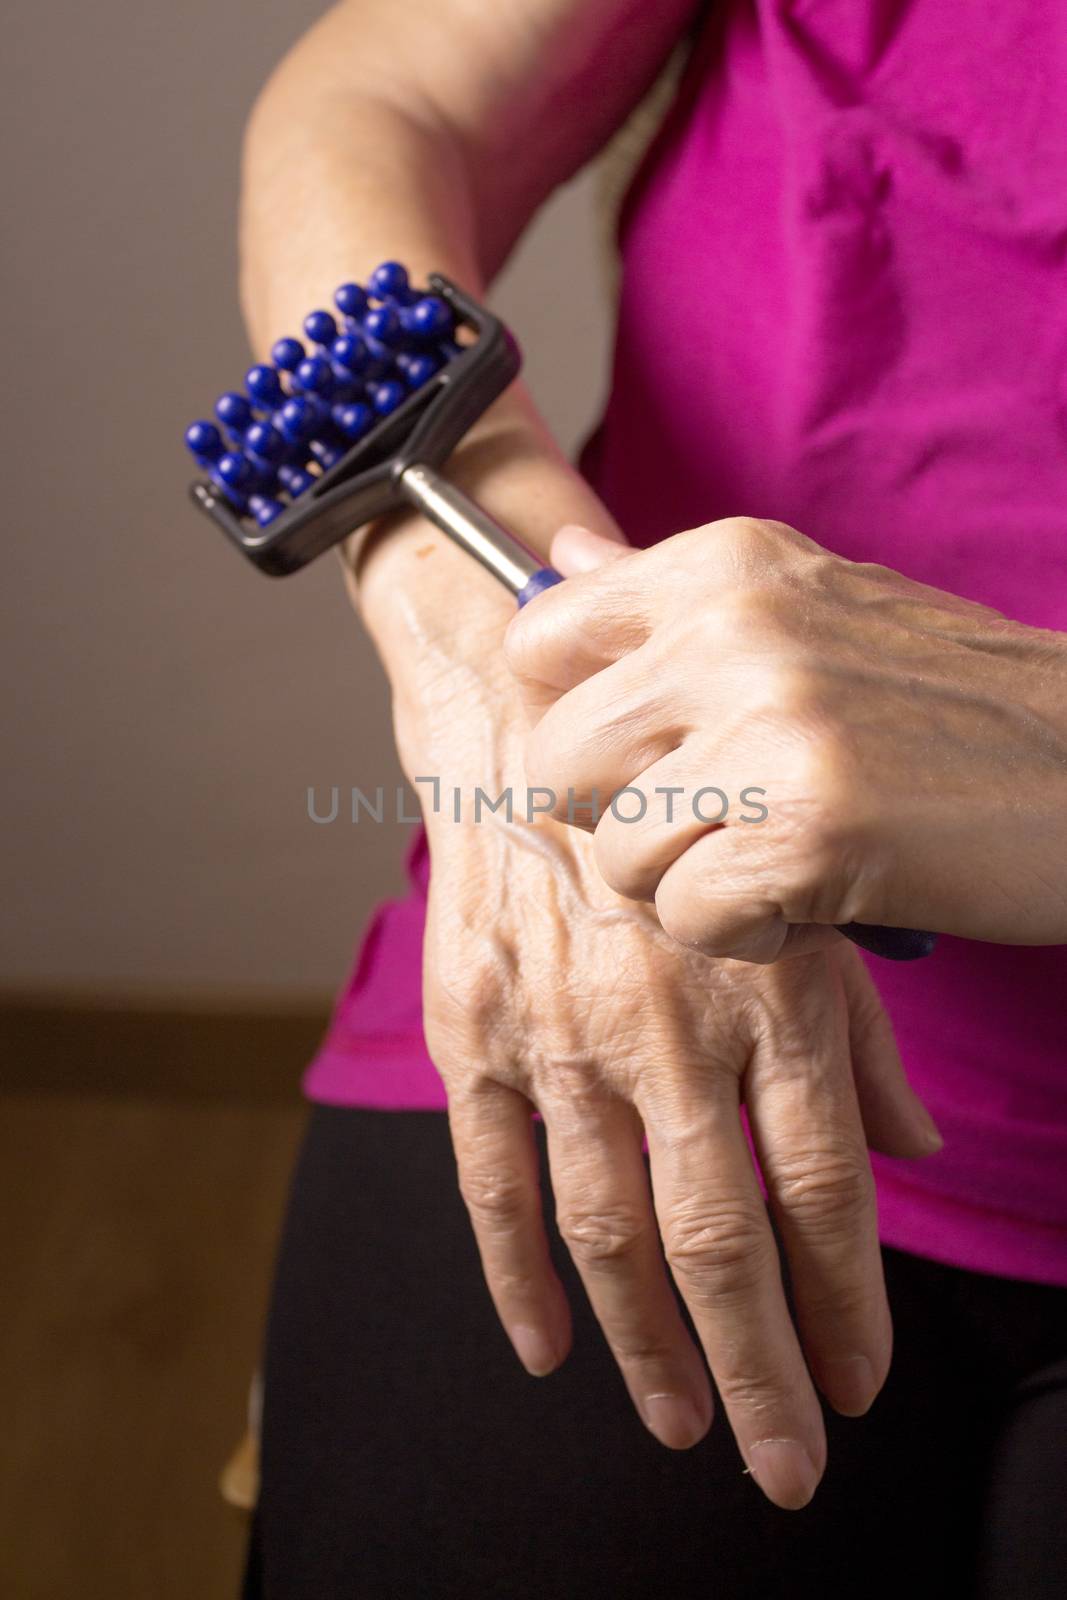 Elderly self massaging the body for pain